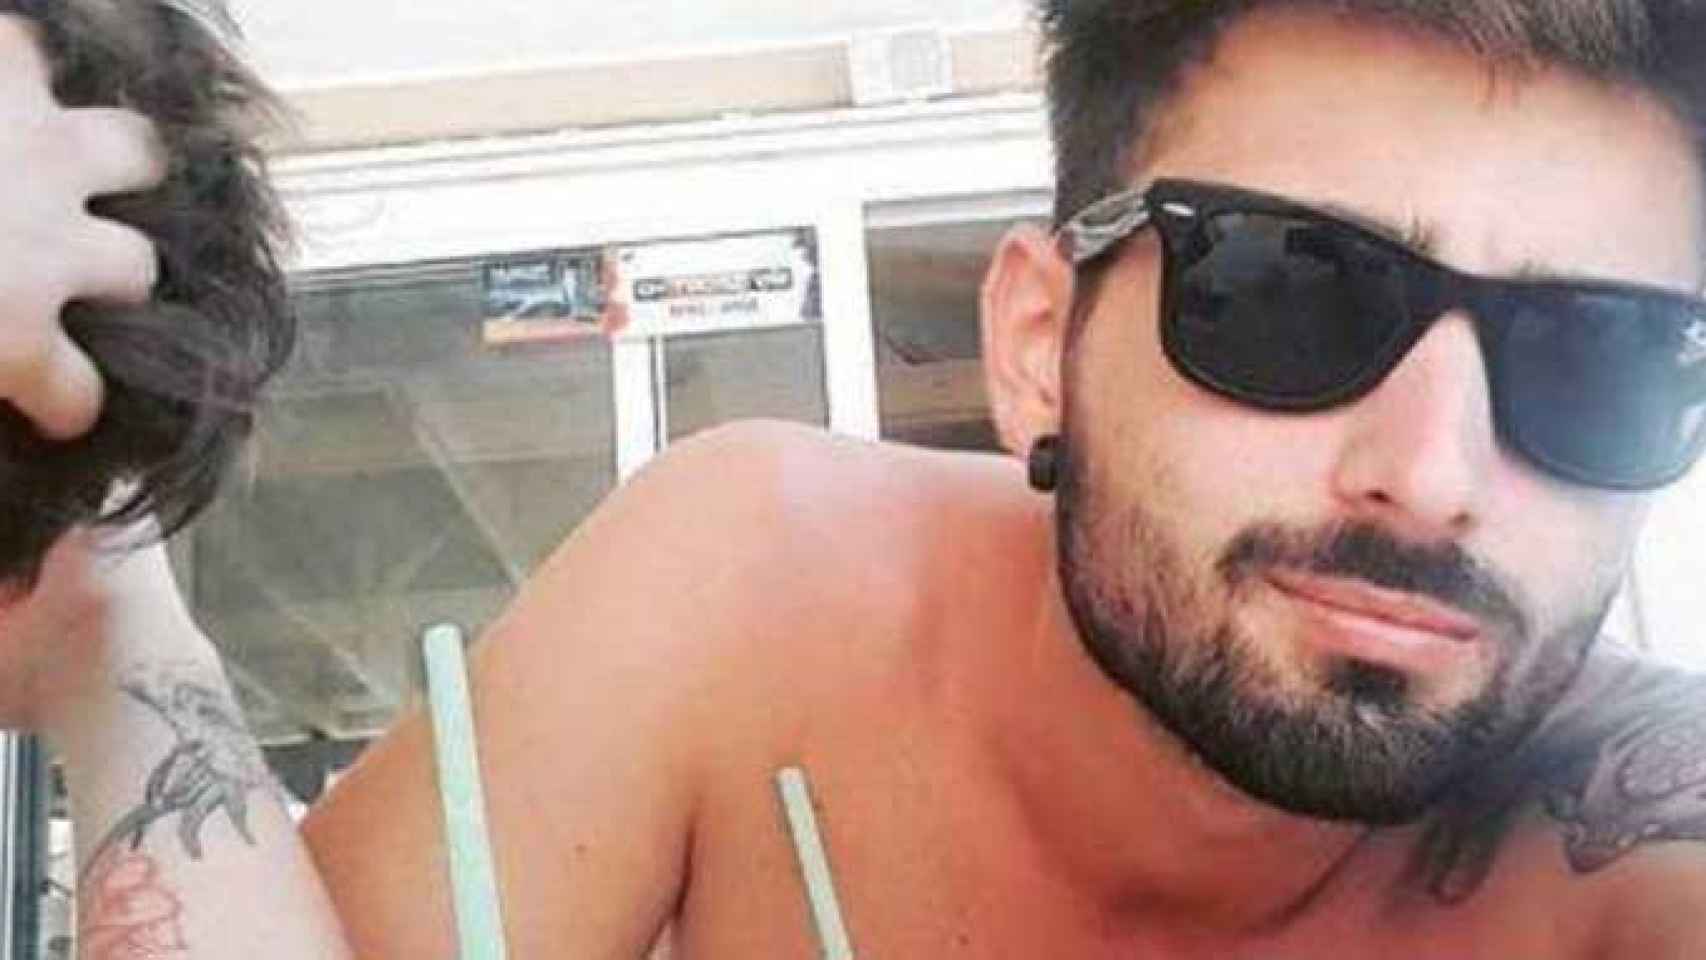 Niccolò Ciatti, el turista italiano que murió en una paliza mortal en una discoteca de Lloret de Mar, en una imagen publicada por 'Il Corriere' / CG